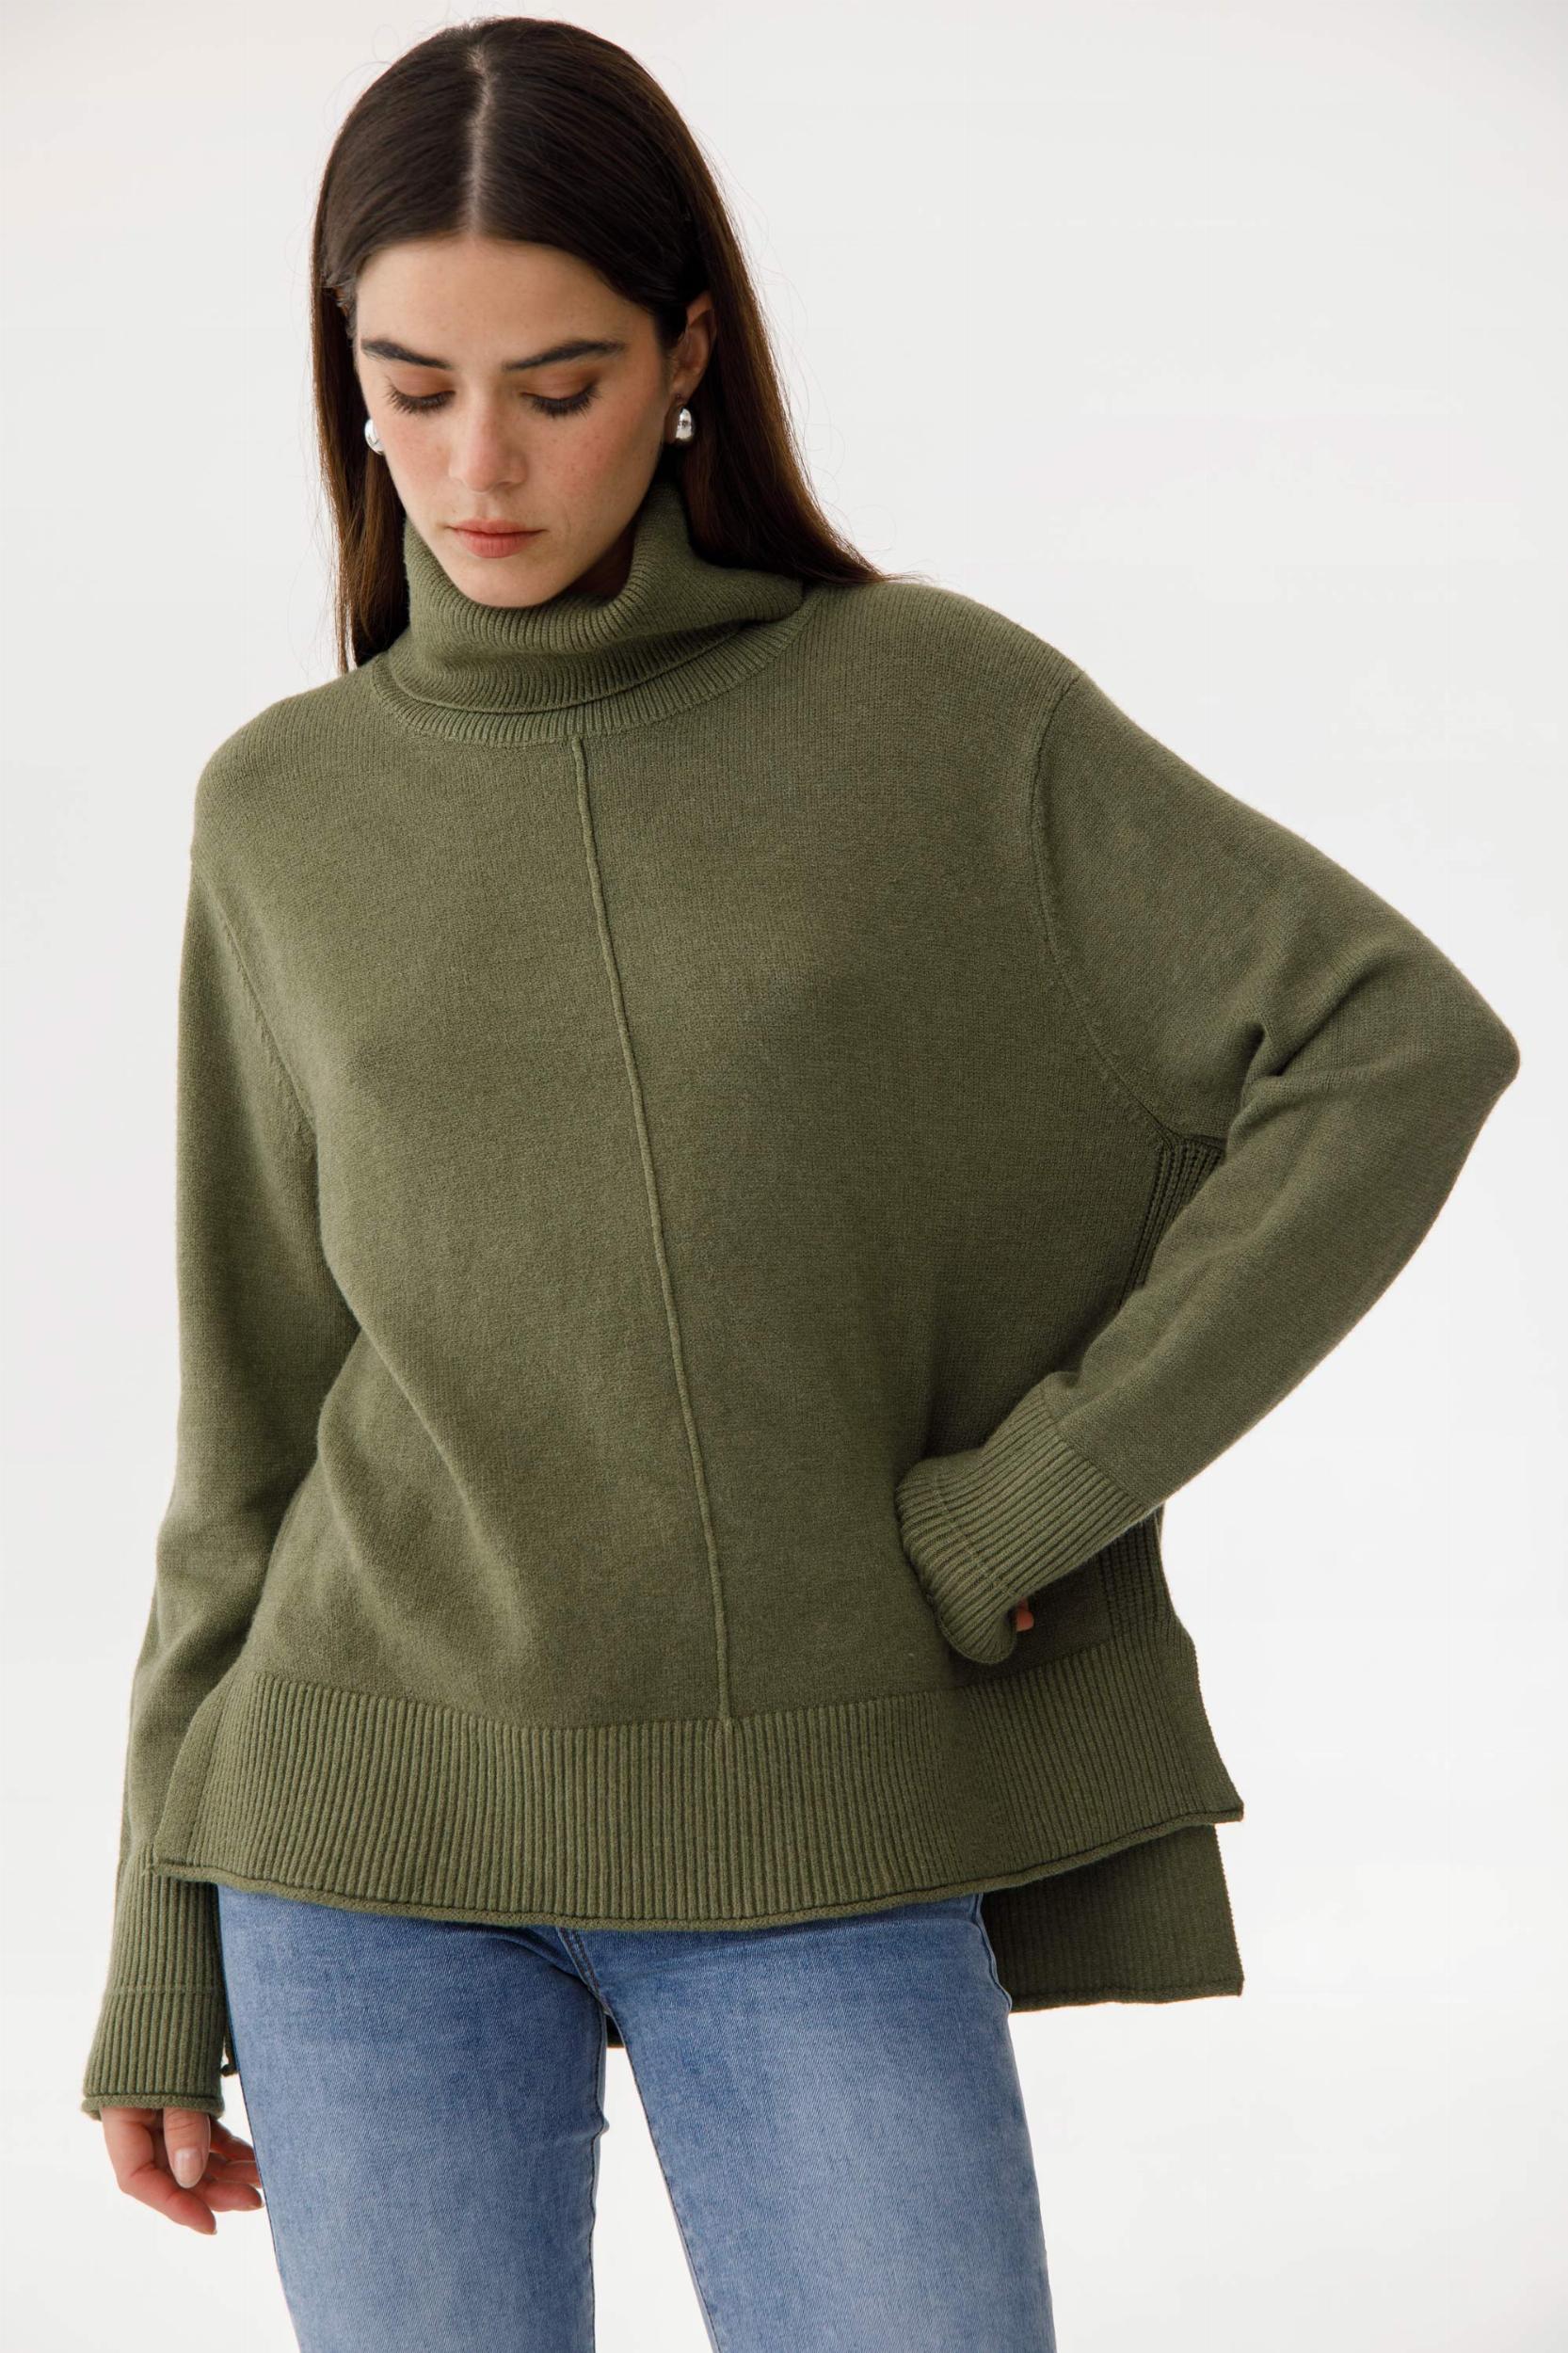 Sweater Polera Serrana verde talle unico